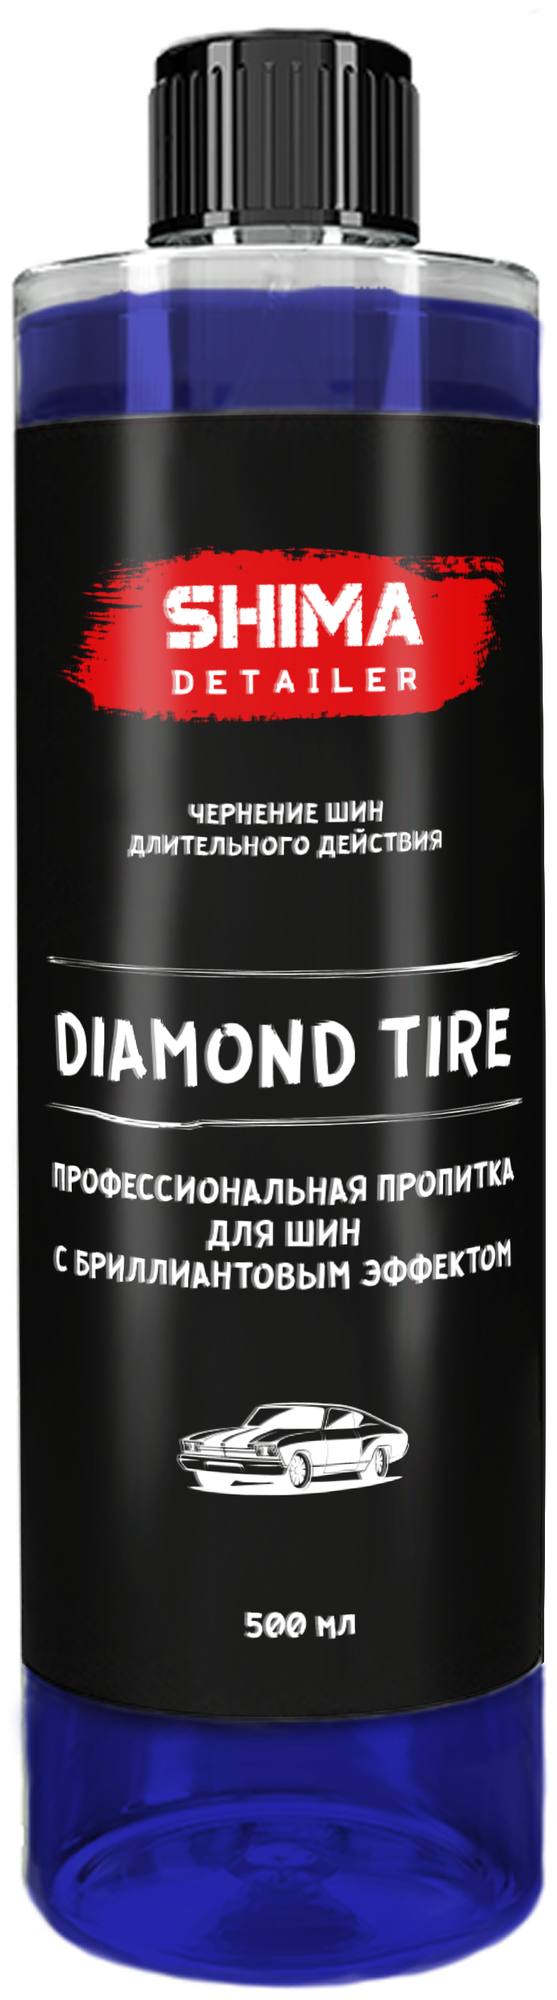 Чернитель резины / чернитель шин / пропитка для шин с бриллиантовым эффектом SHIMA DETAILER "DIAMOND TIRE" 500мл 4603740920070